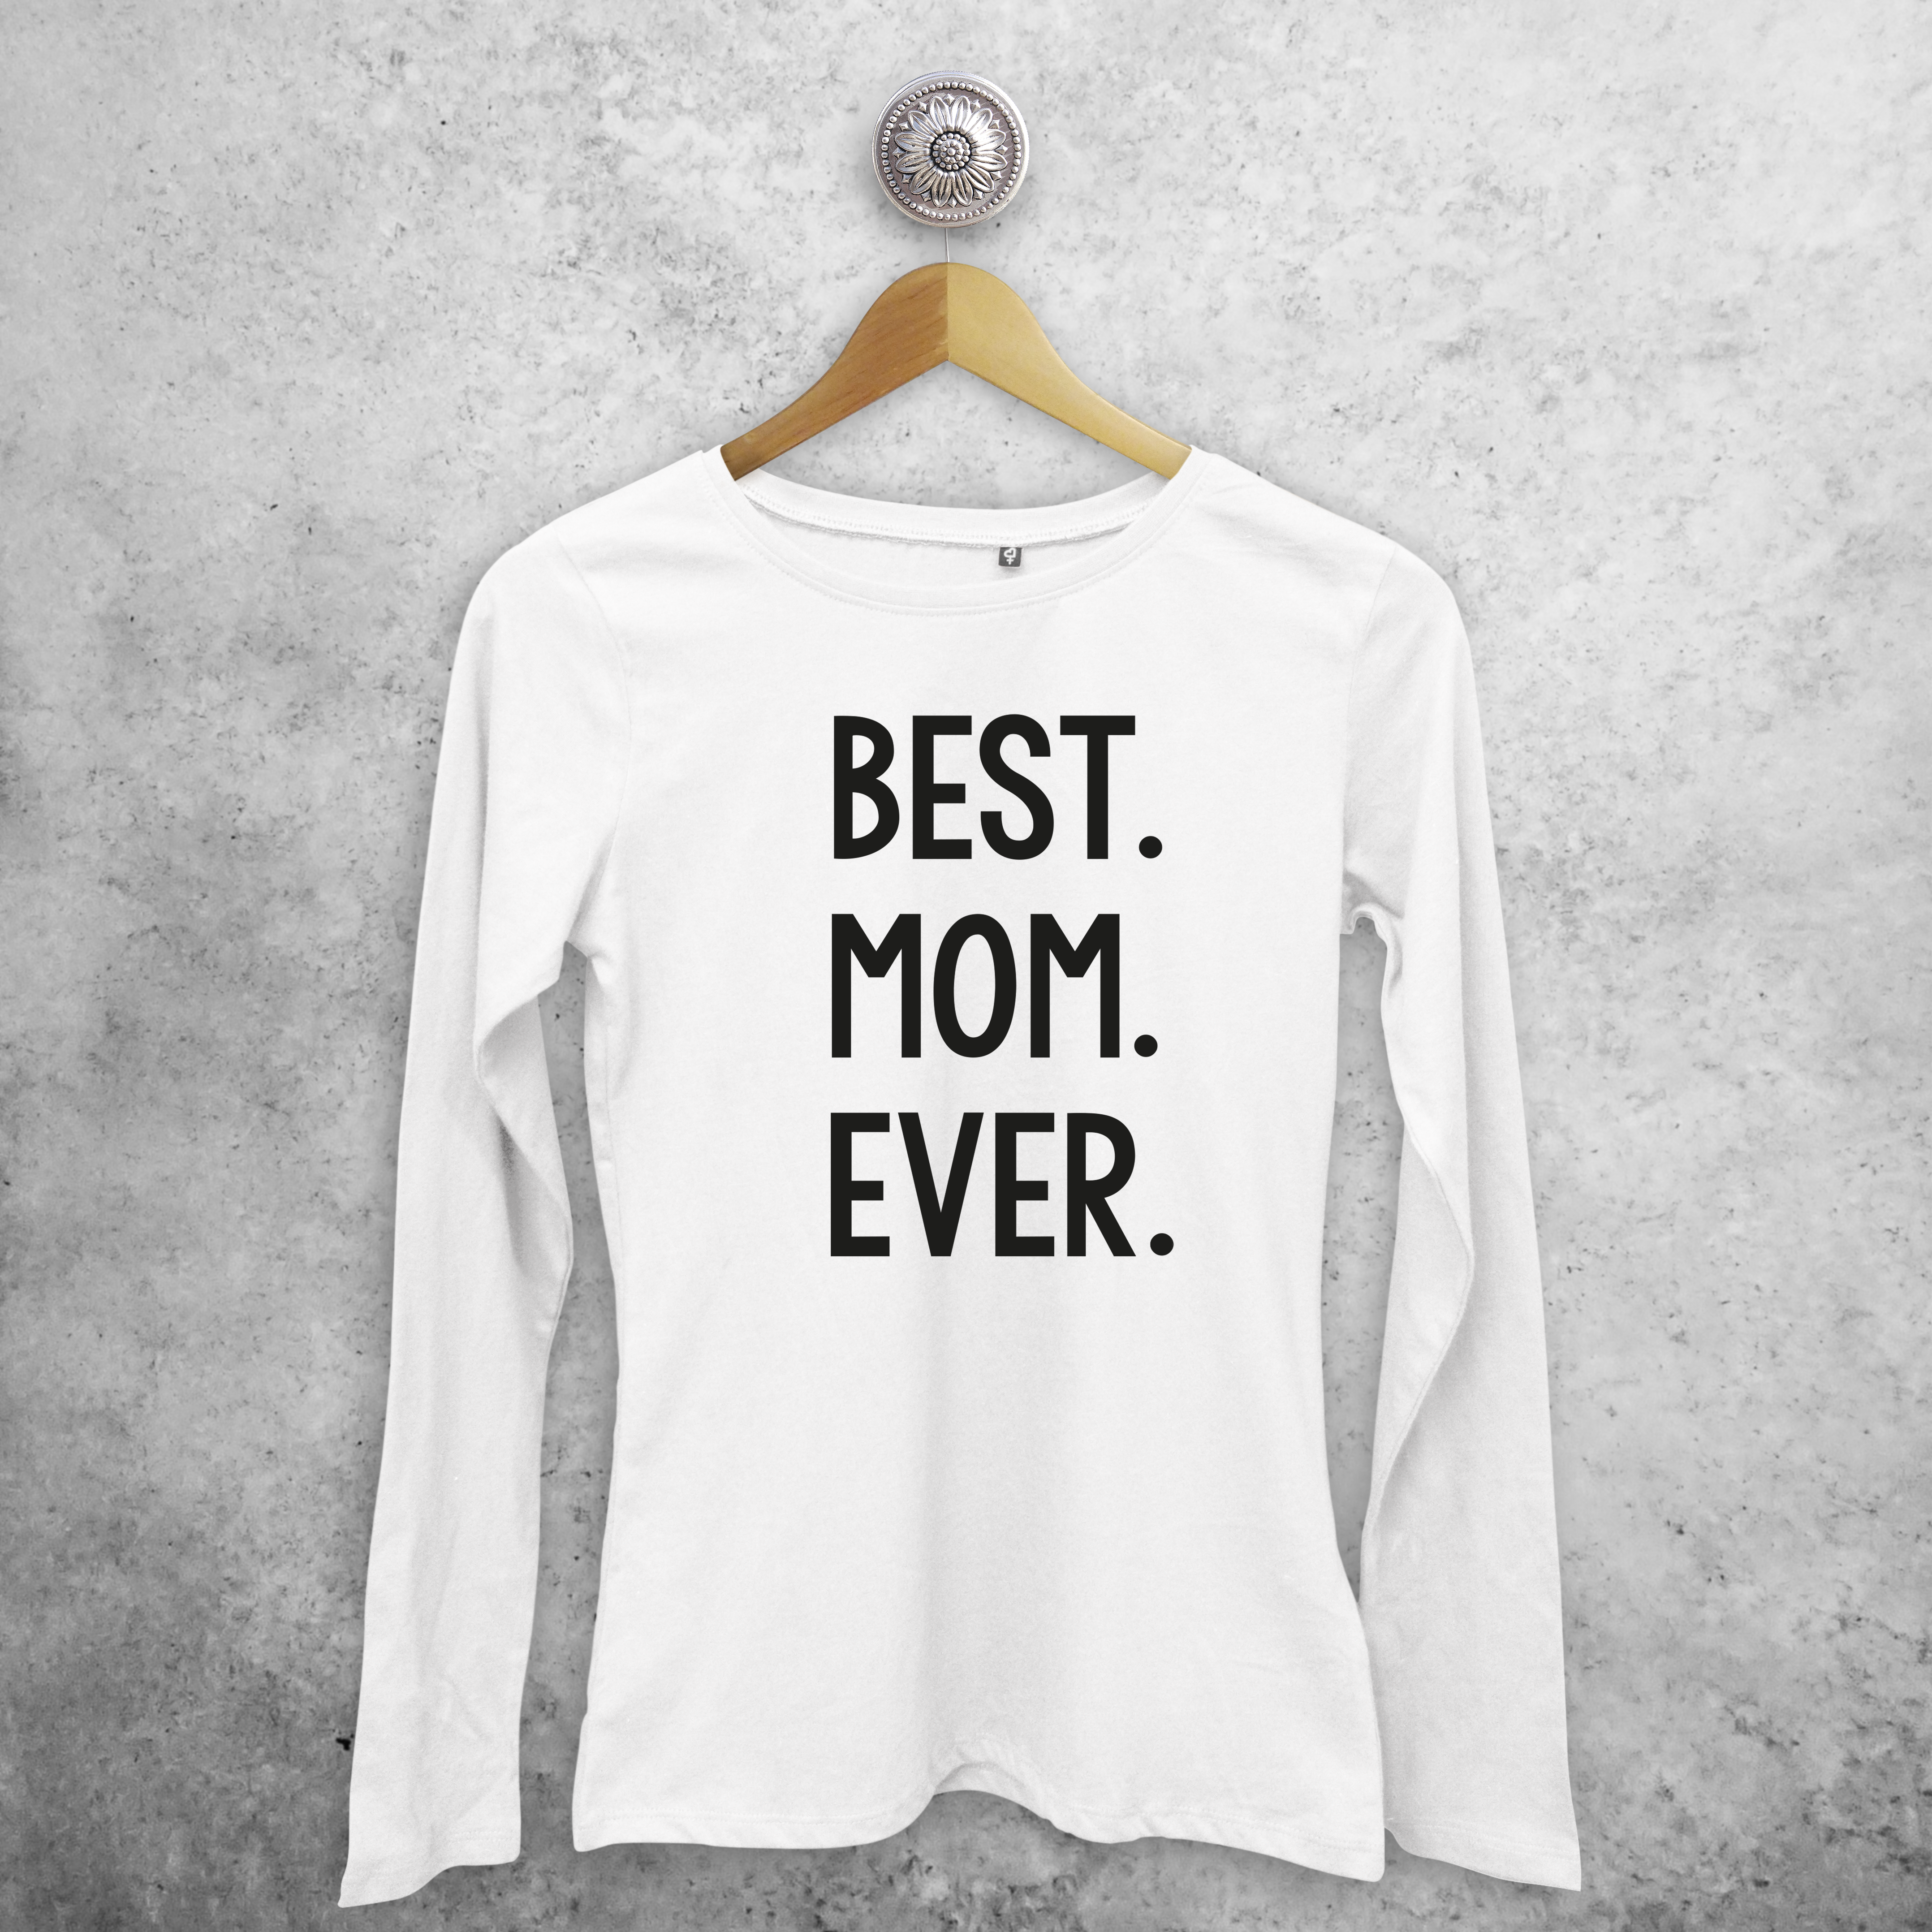 'Best. Mom. Ever.' volwassene shirt met lange mouwen